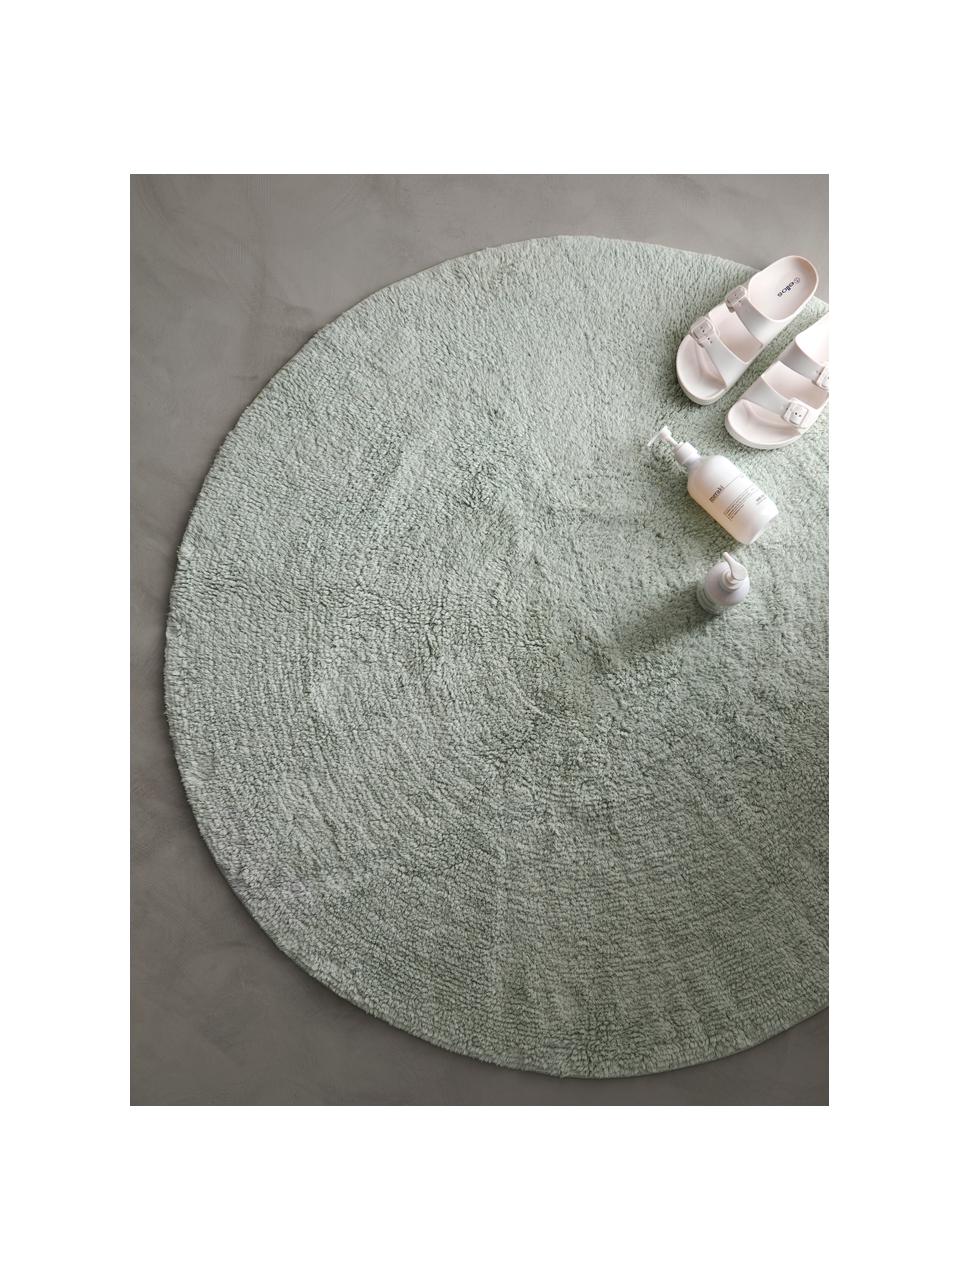 Tappeto bagno in cotone verde menta Ingela, 100% cotone, Verde menta, Ø 120 cm